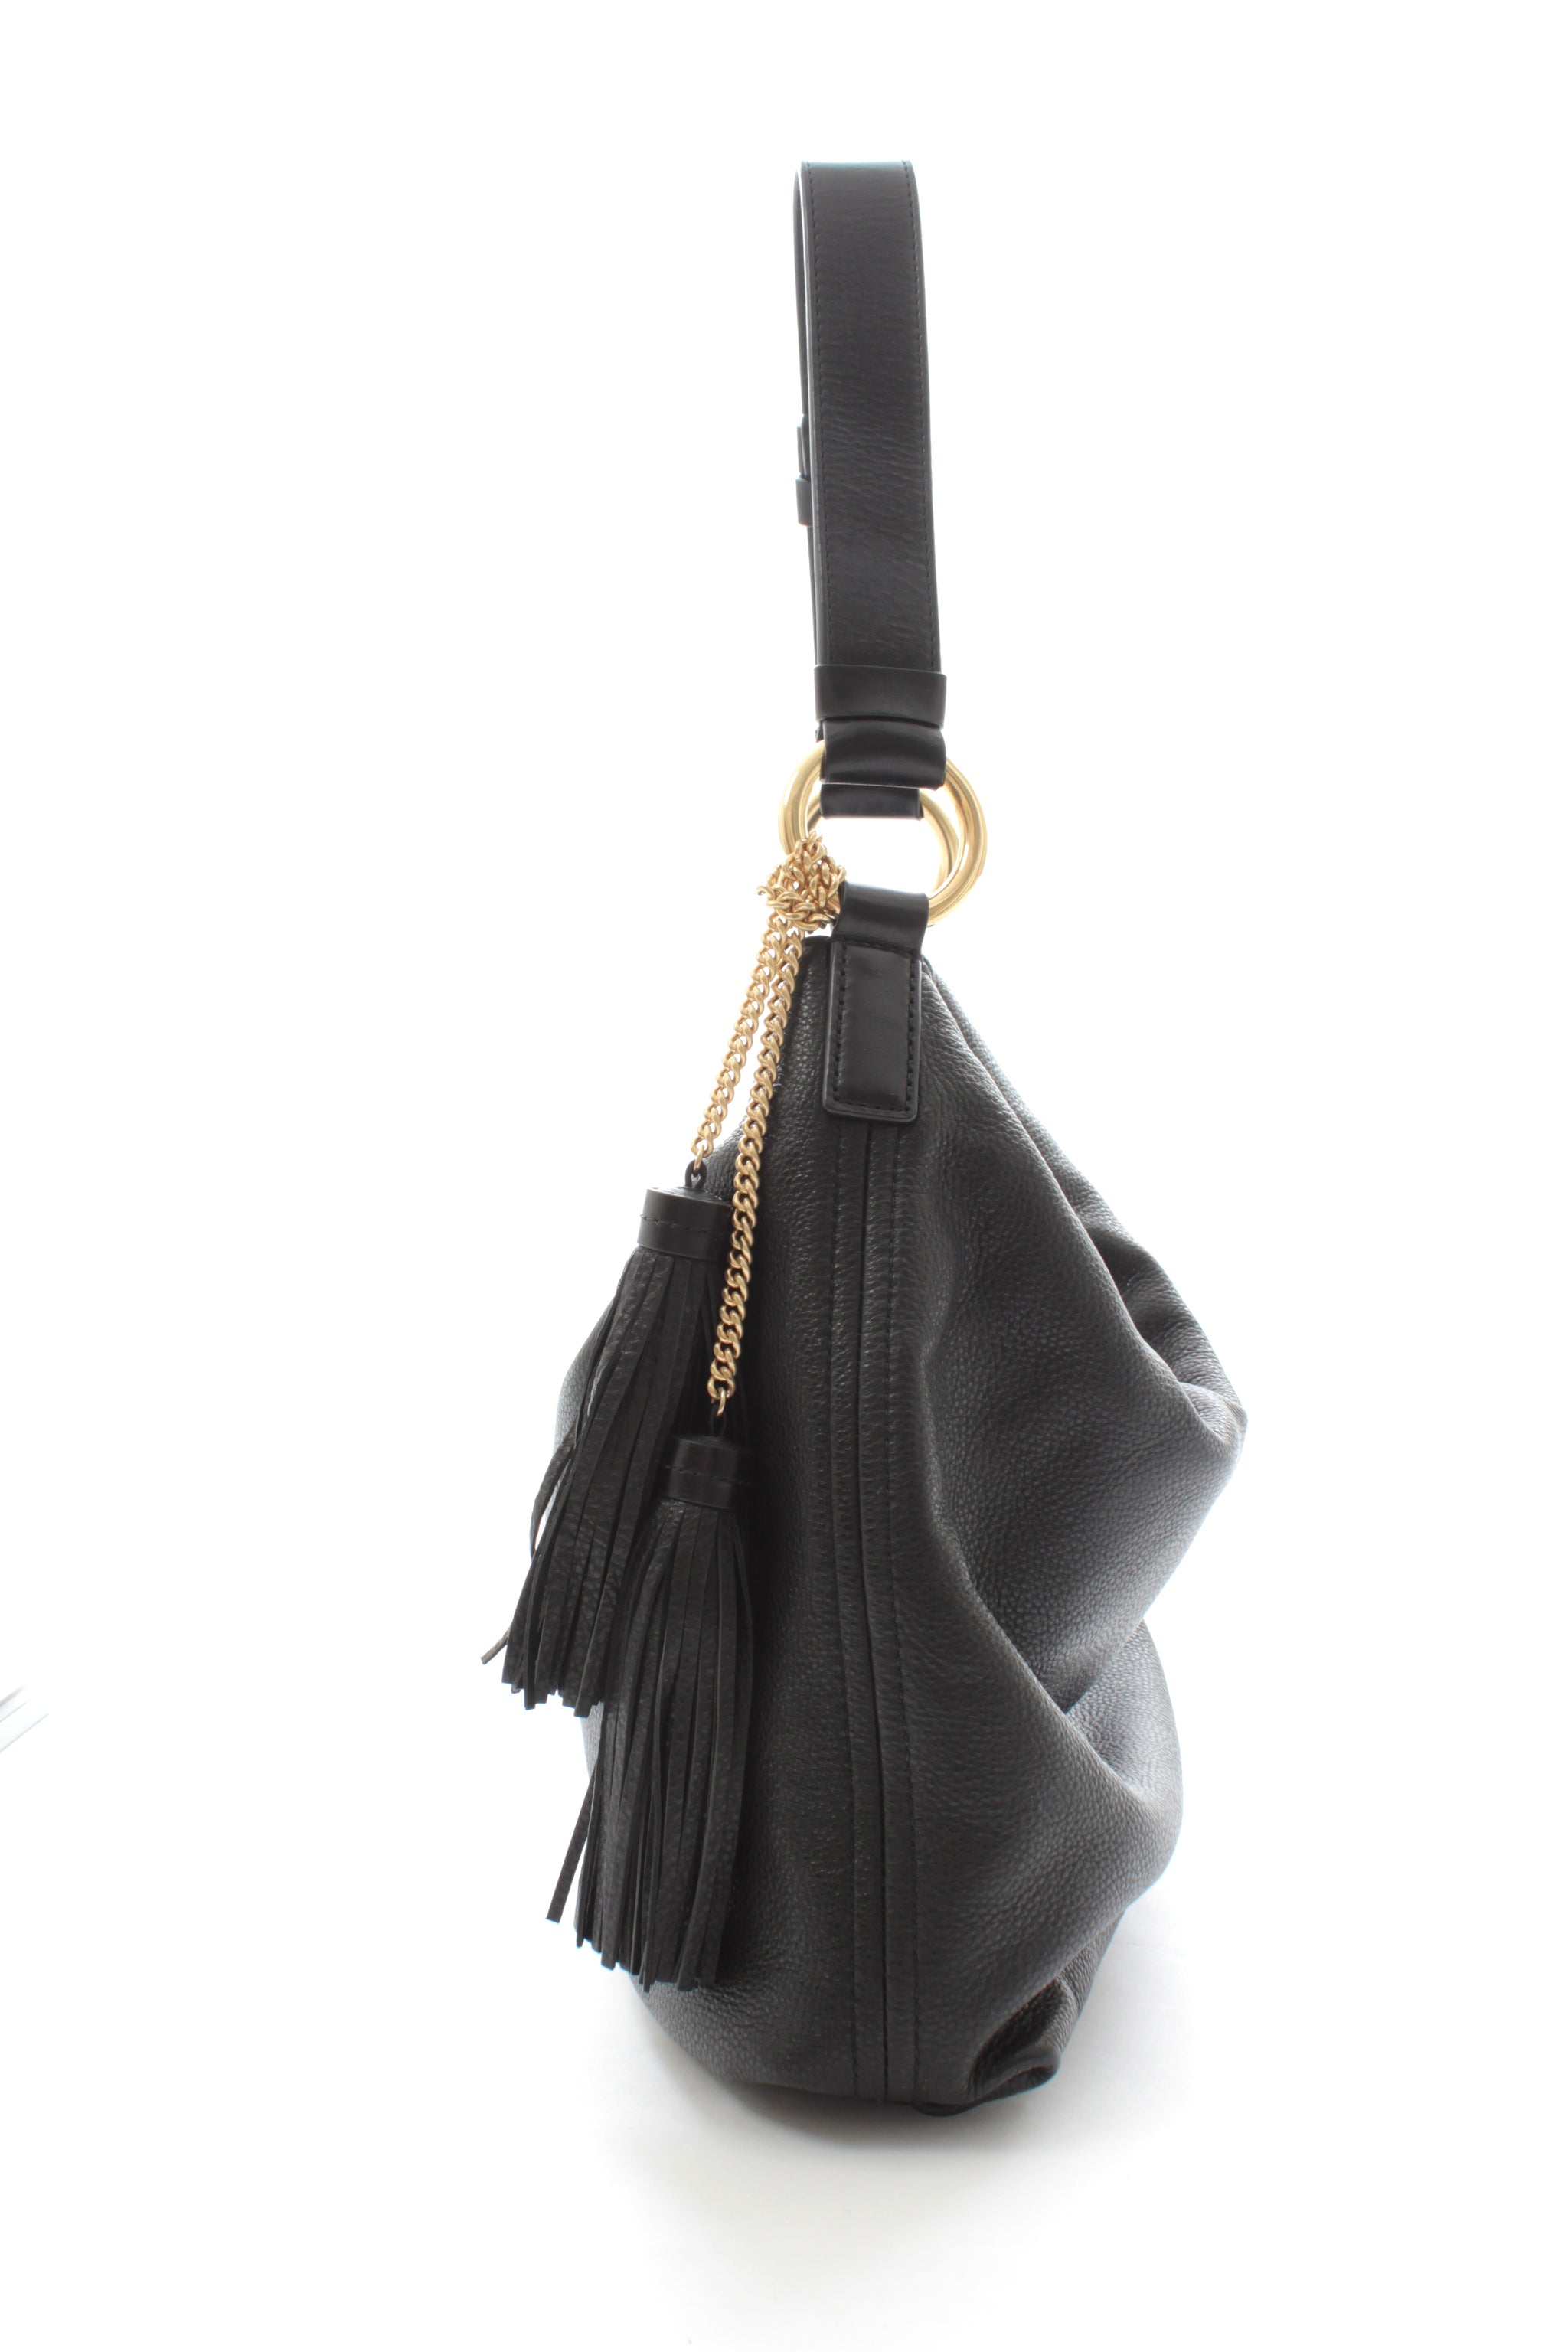 Michael Michael Kors Bags | Michael Kors Large Tote Leather Bag | Color: Black/Gold | Size: Os | Soiresamboy's Closet